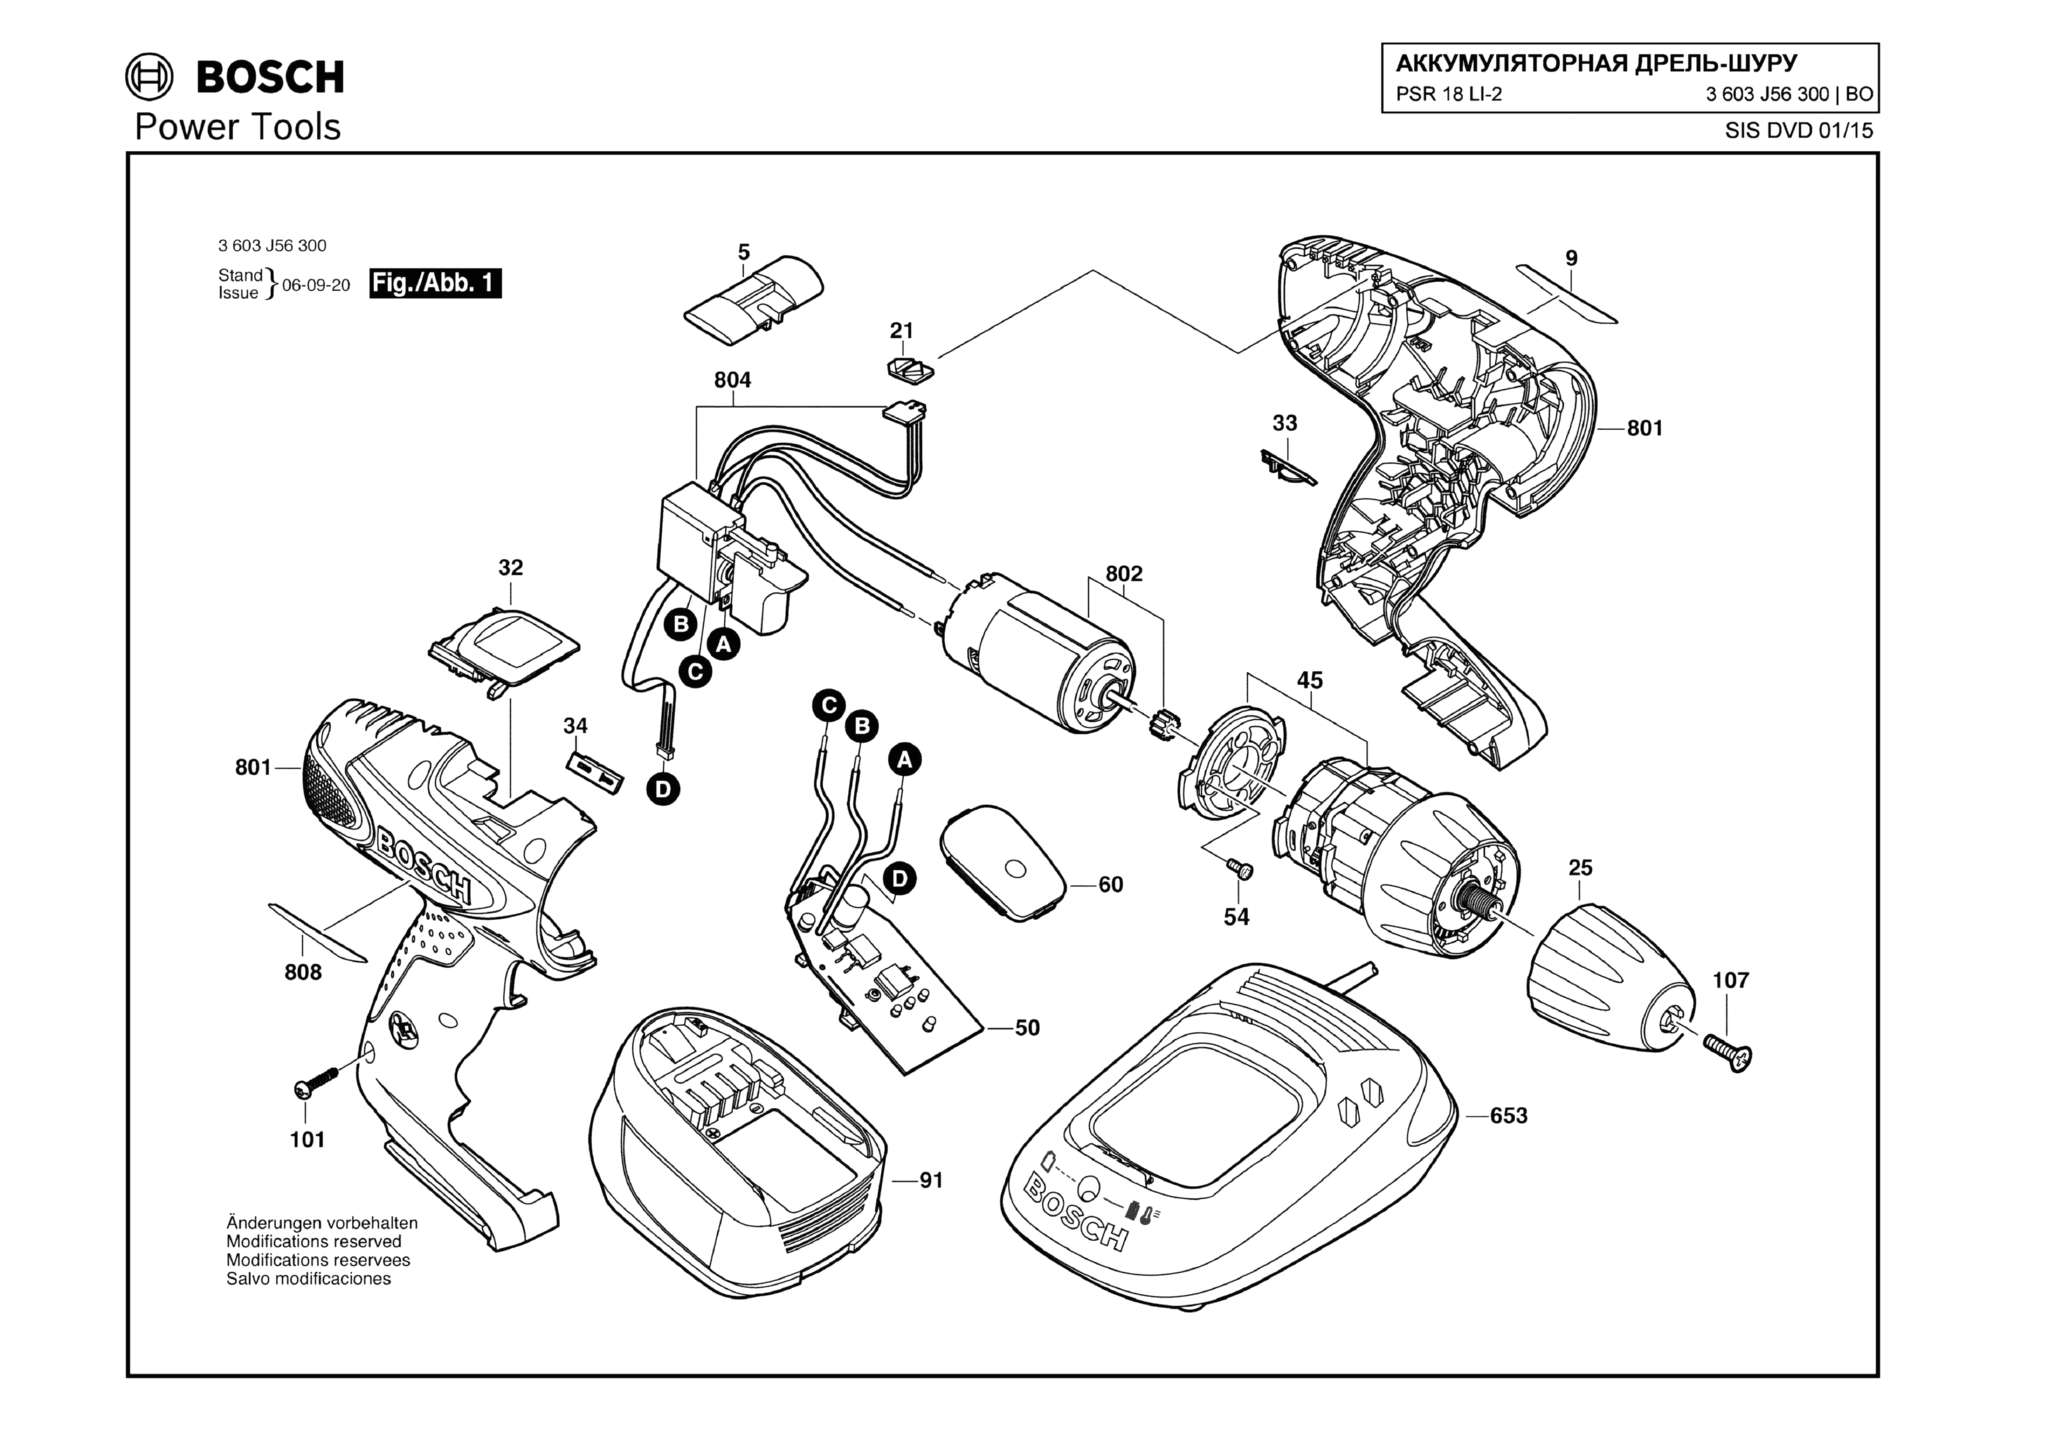 Запчасти, схема и деталировка Bosch PSR 18 LI-2 (ТИП 3603J56300)